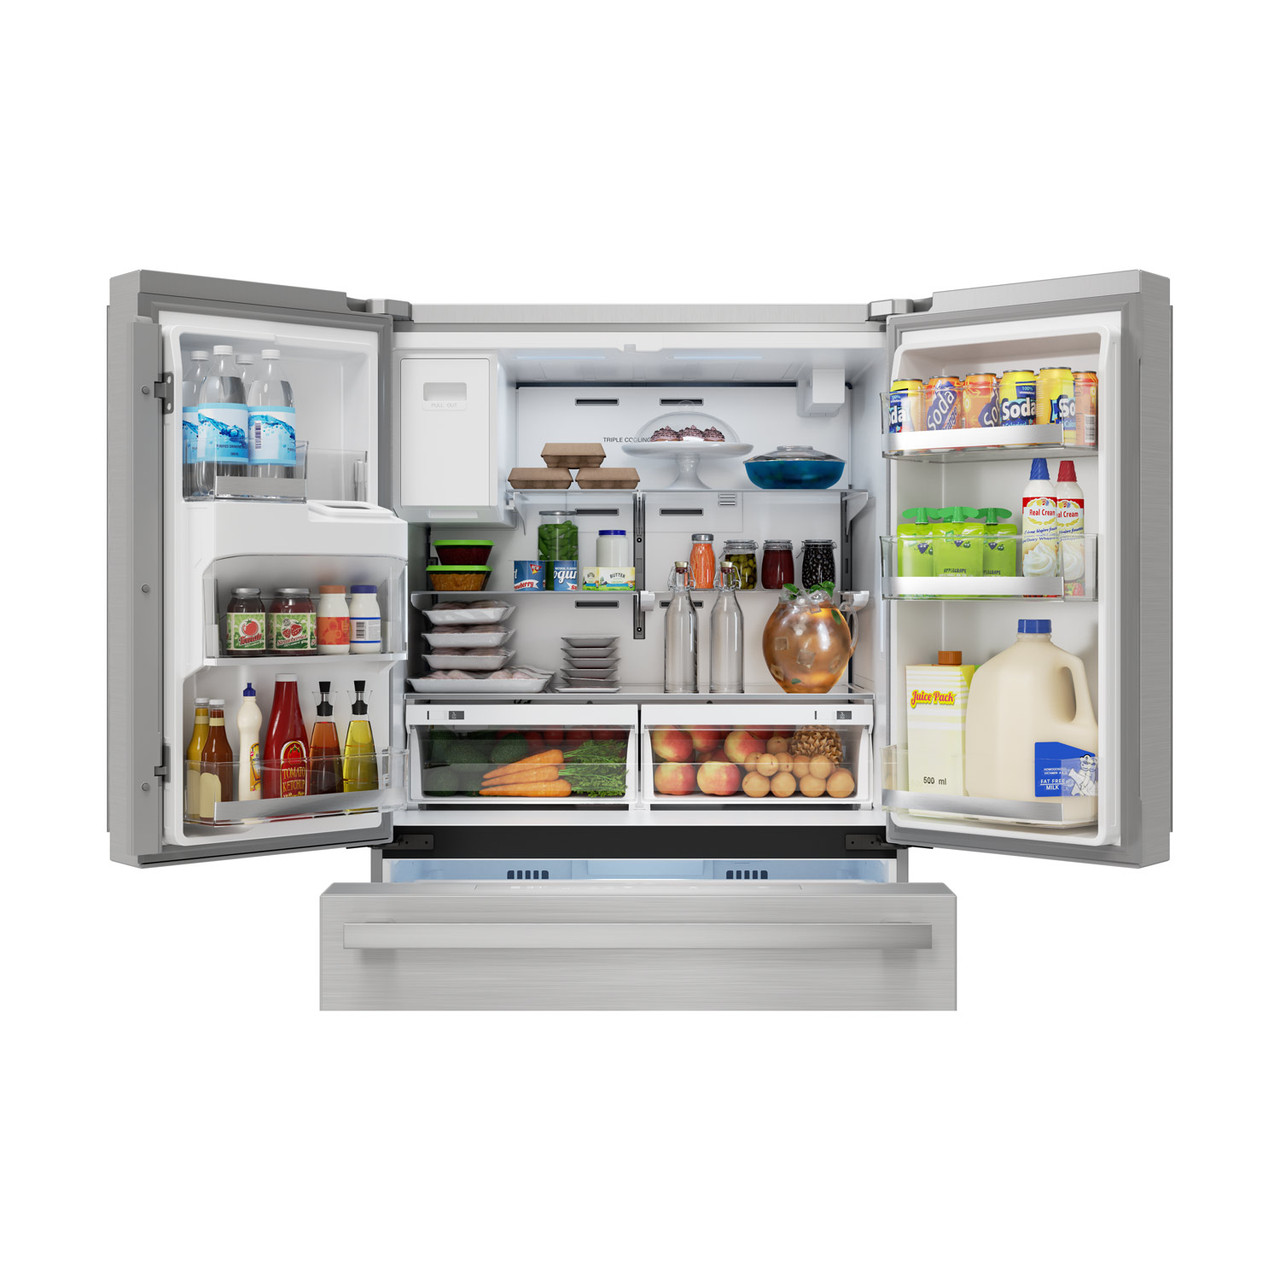 Sharp French 4-Door Counter-Depth Refrigerator with Water Dispenser (SJG2254FS) open door with food